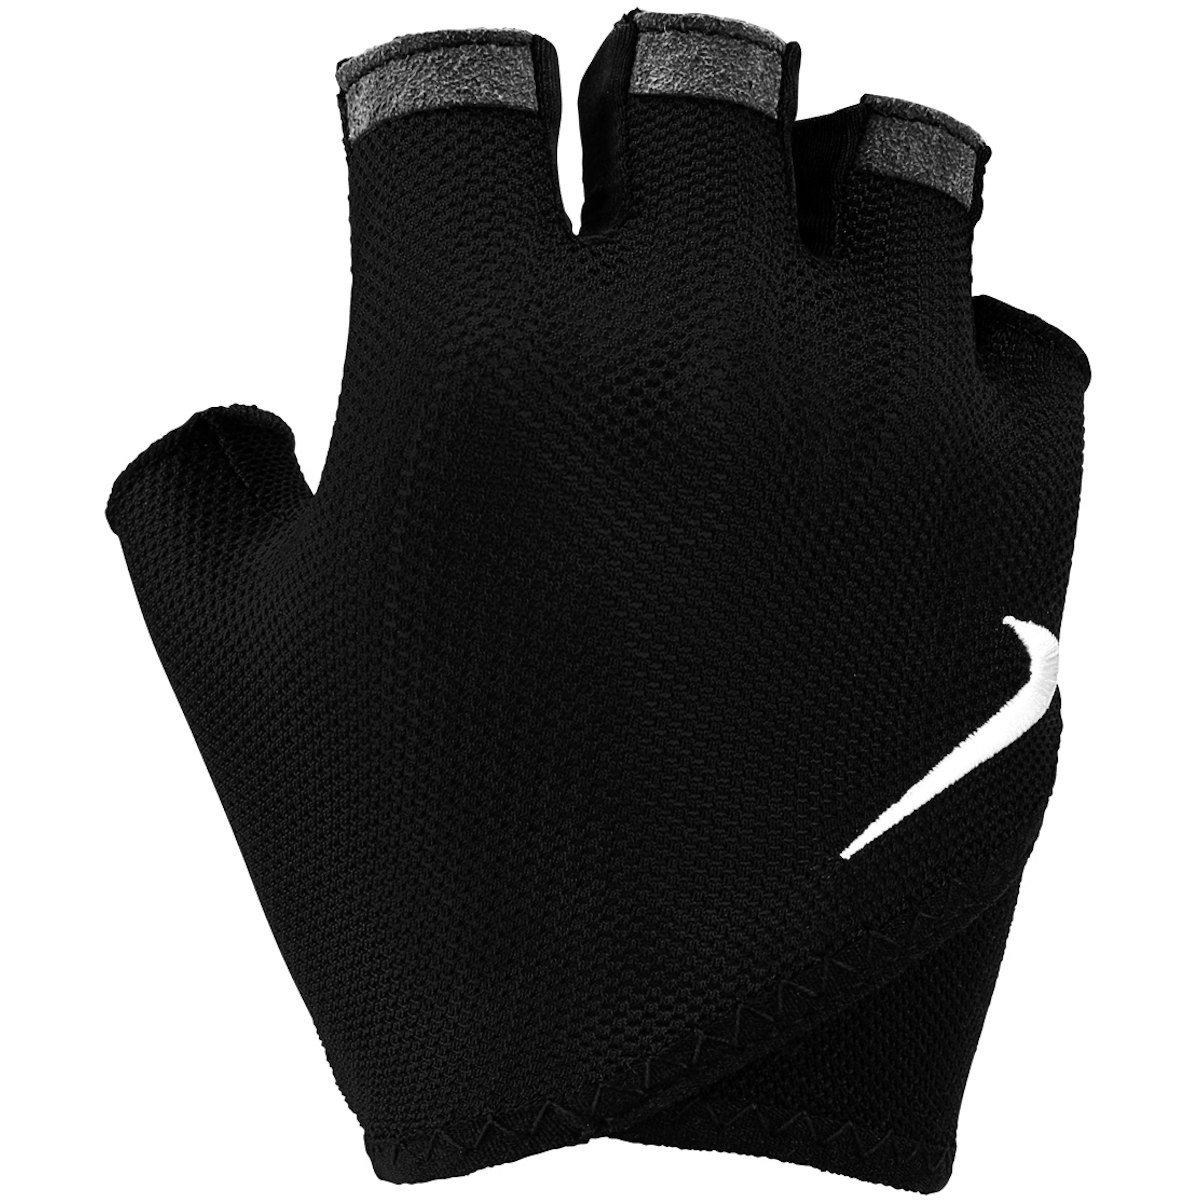 Produktbild von Nike Printed Gym Essential Fitness Damen Handschuhe - black/white 010